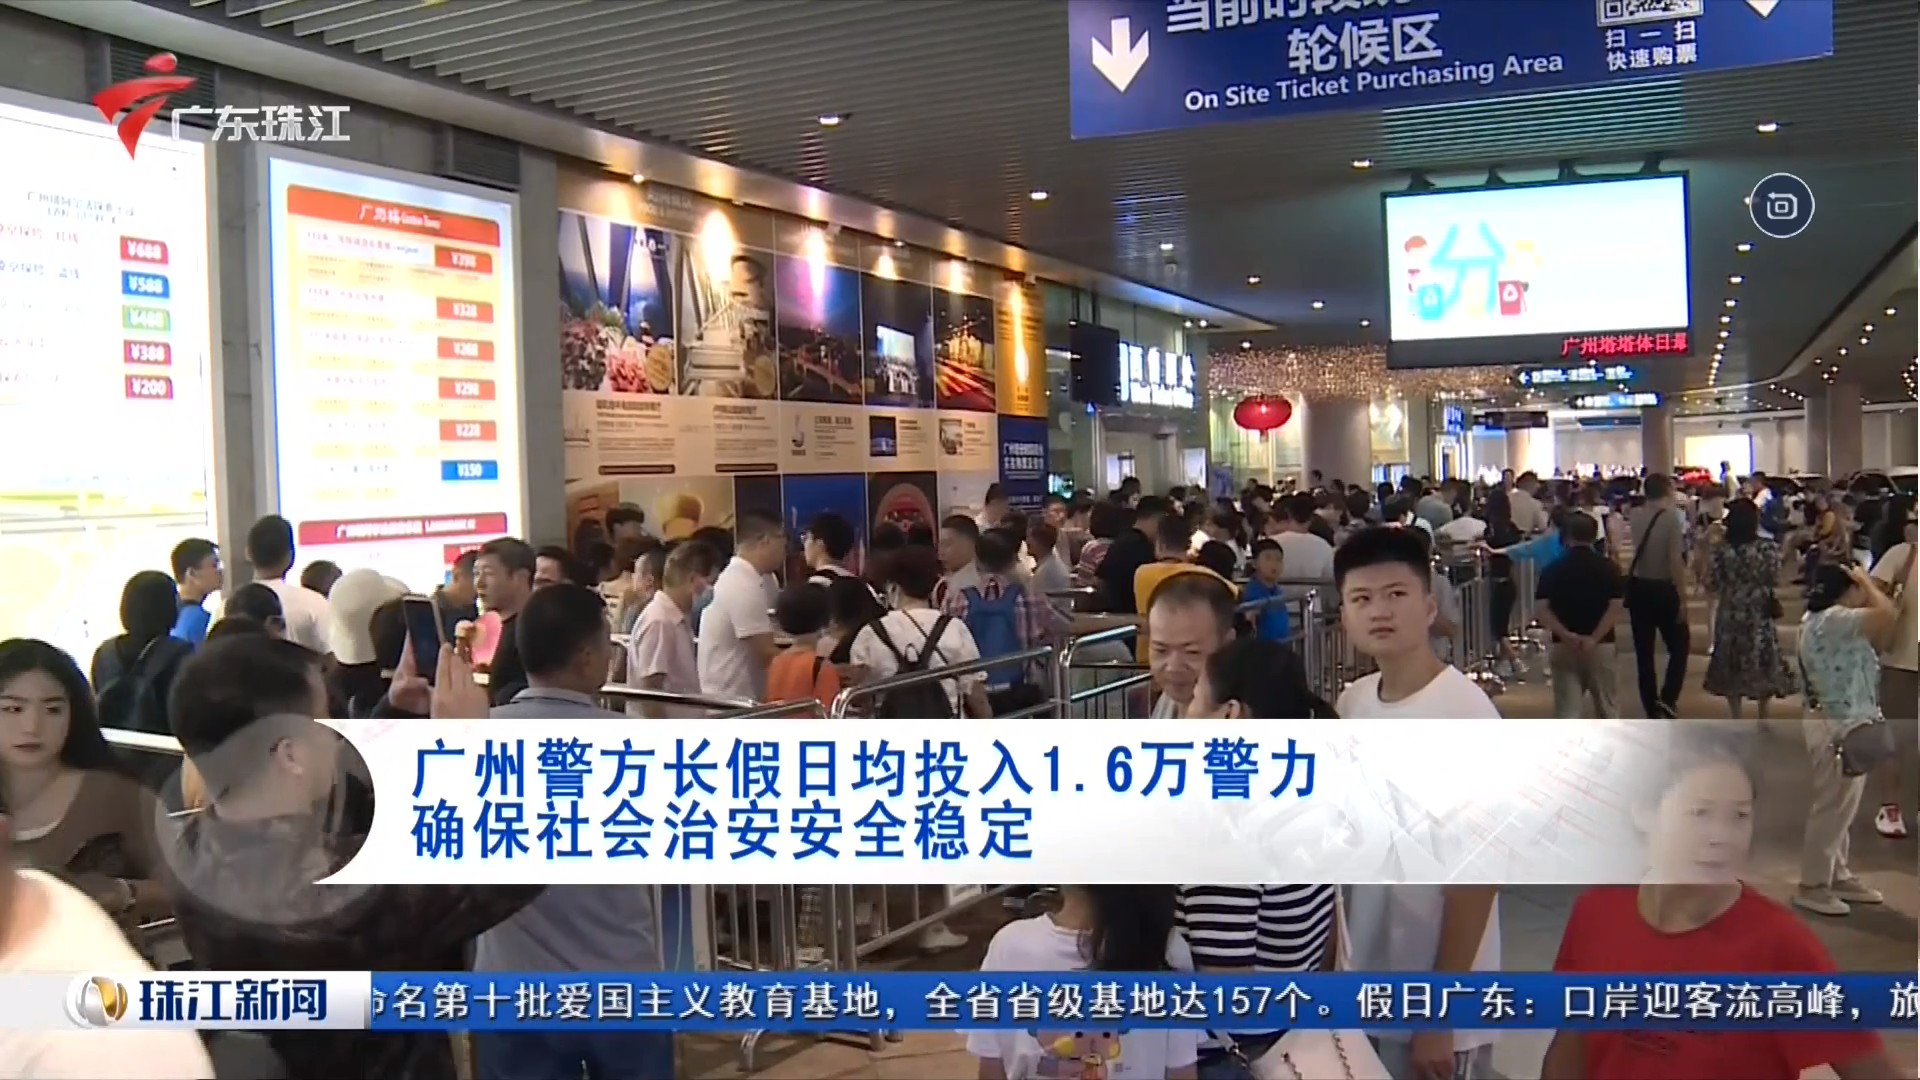 广东珠江频道 珠江新闻 广州警方长假日均投入1.6万警力 确保社会治安安全稳定